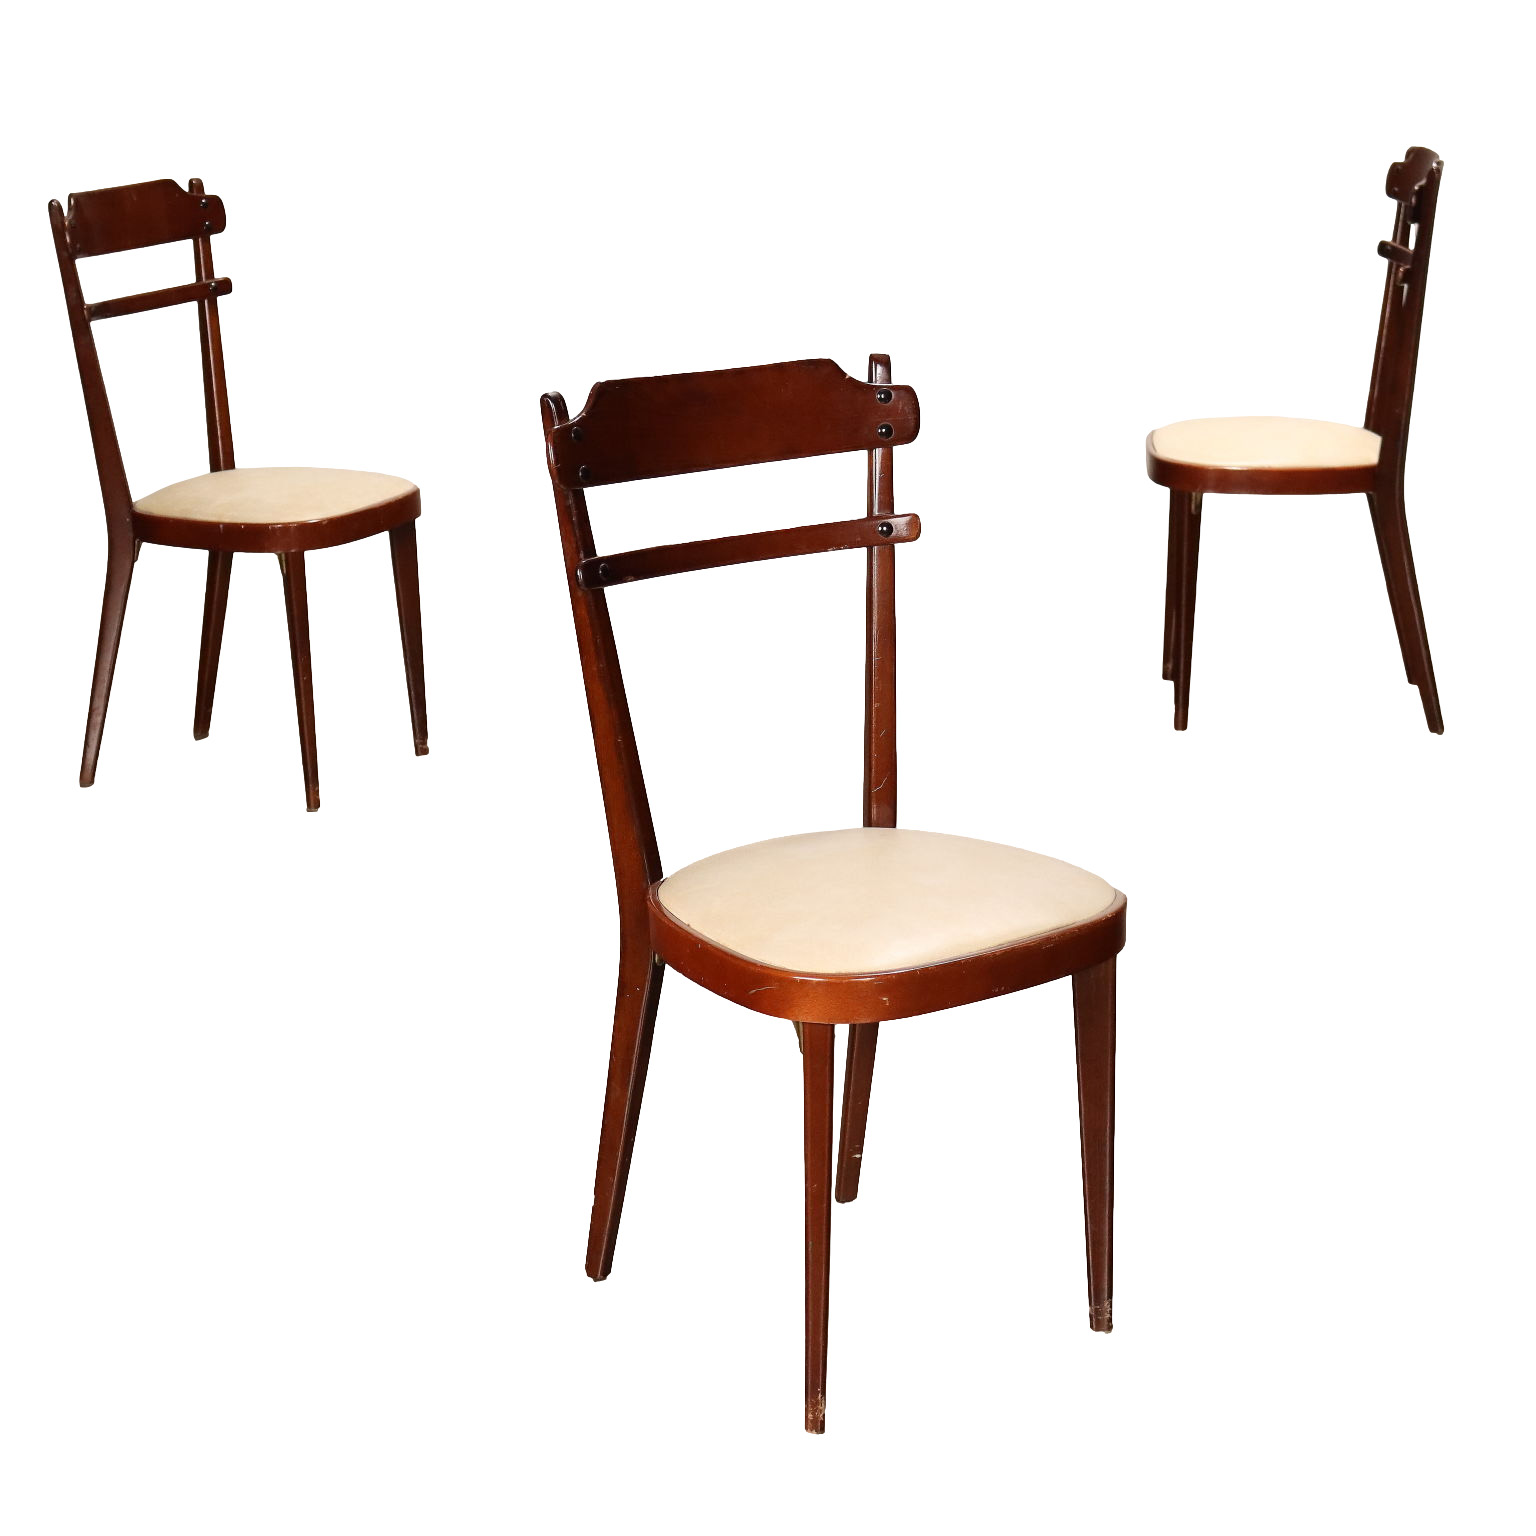 Table en teck pliante - Bureaux, tables , chaises style marin